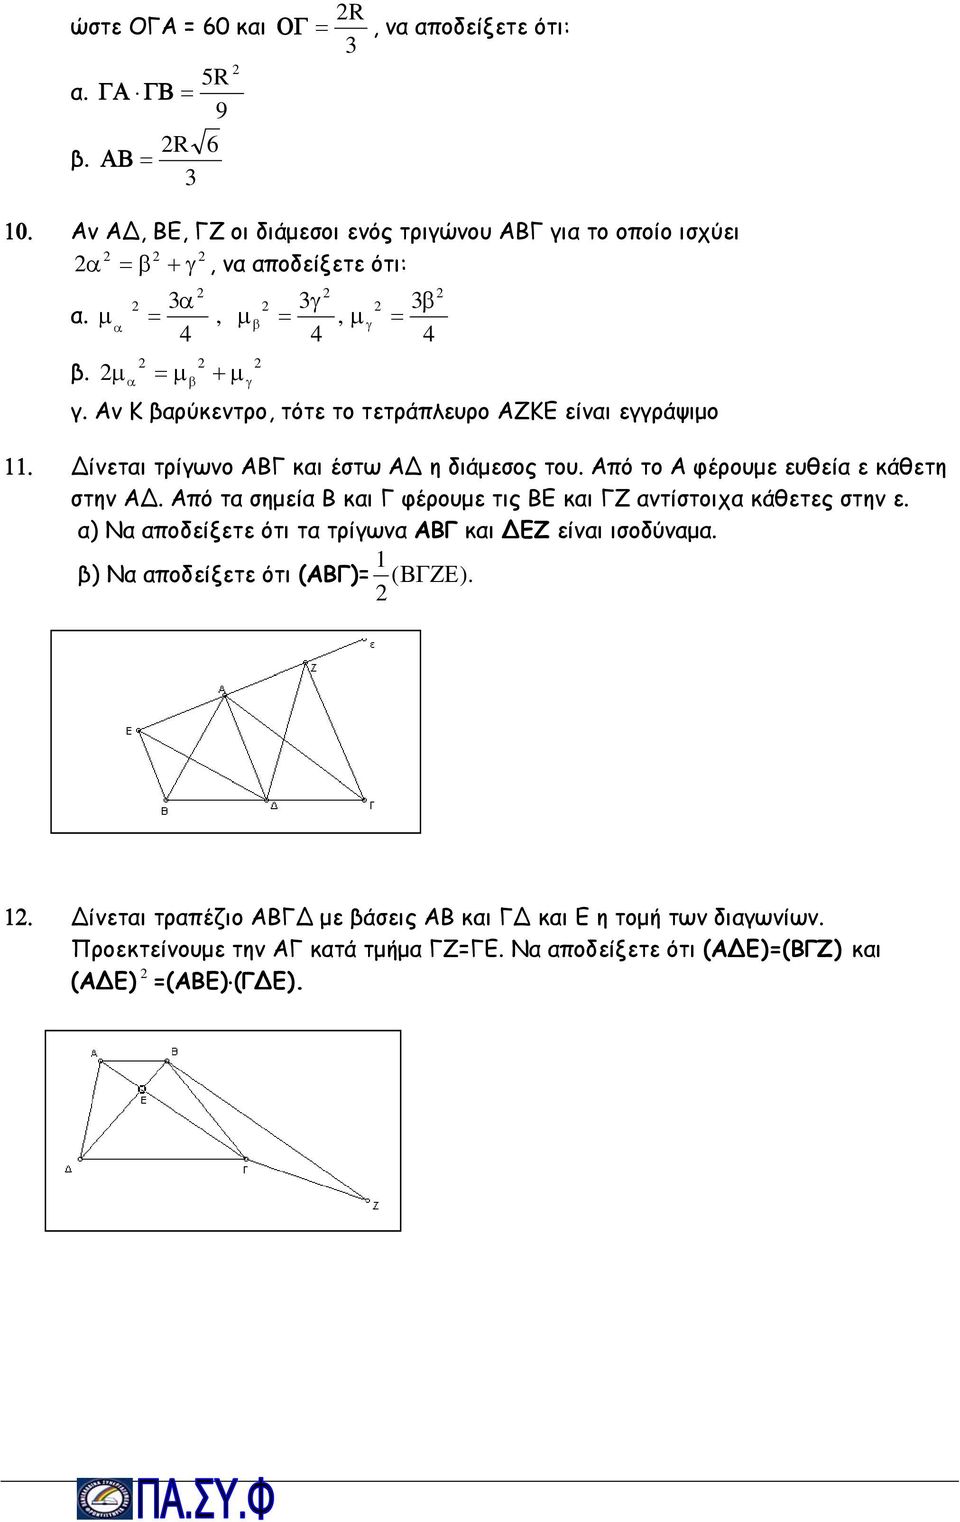 Από τα σημεία Β και Γ φέρουμε τις ΒΕ και ΓΖ αντίστοιχα κάθετες στην ε. α) Να αποδείξετε ότι τα τρίγωνα ΑΒΓ και ΕΖ είναι ισοδύναμα. β) Να αποδείξετε ότι (ΑΒΓ)= 1 